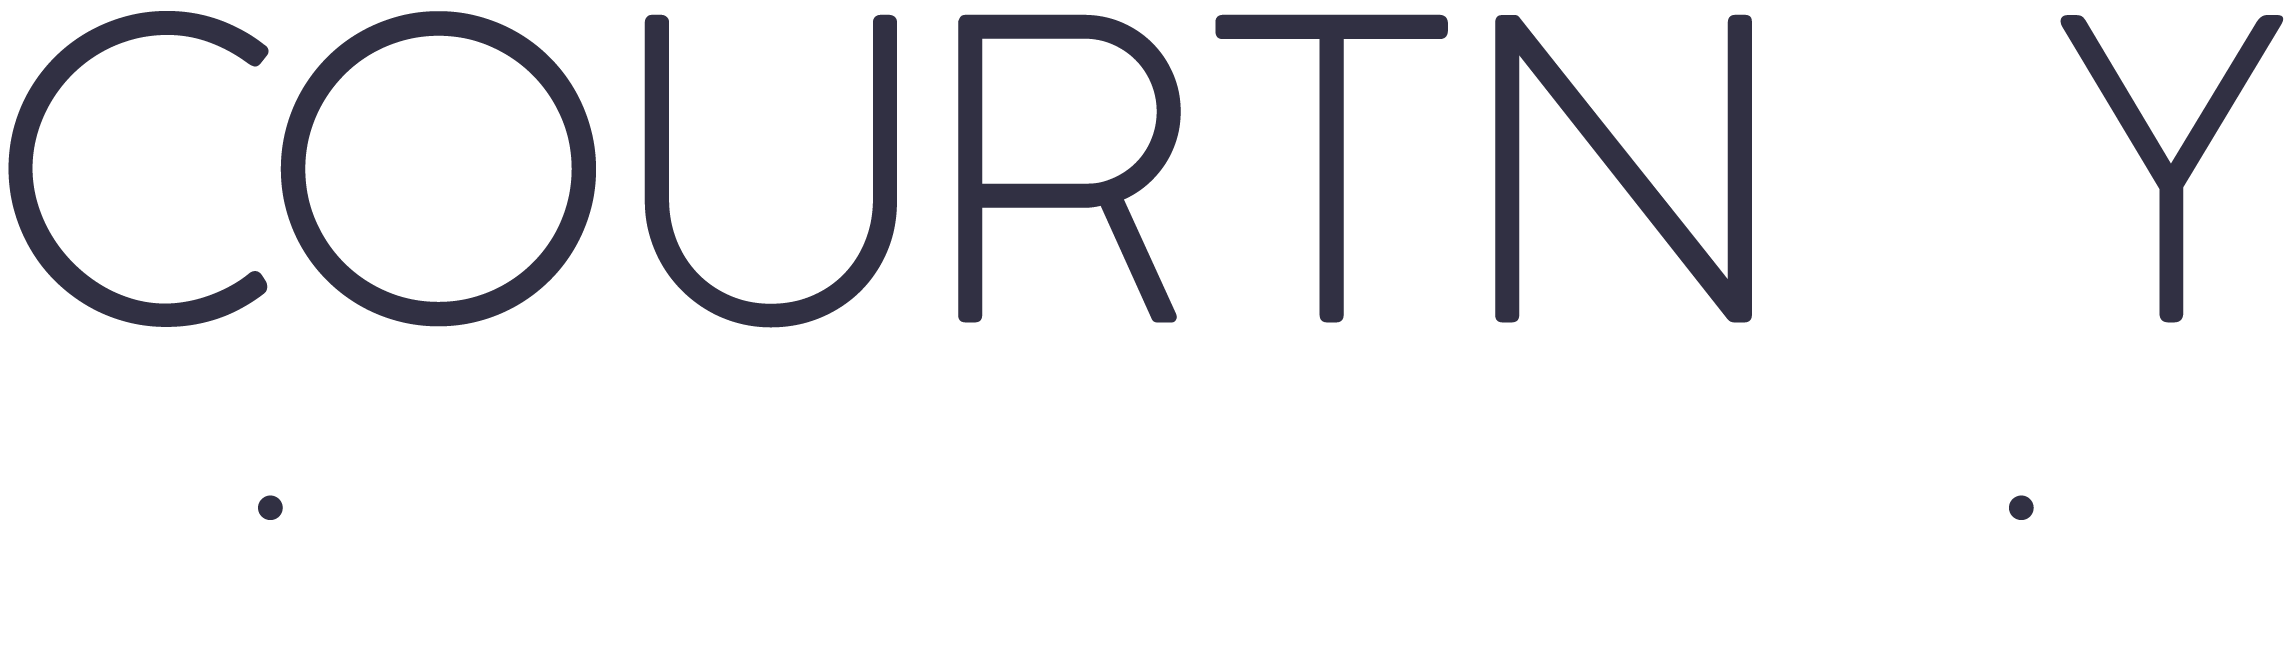 courtney-web-logo-01-01